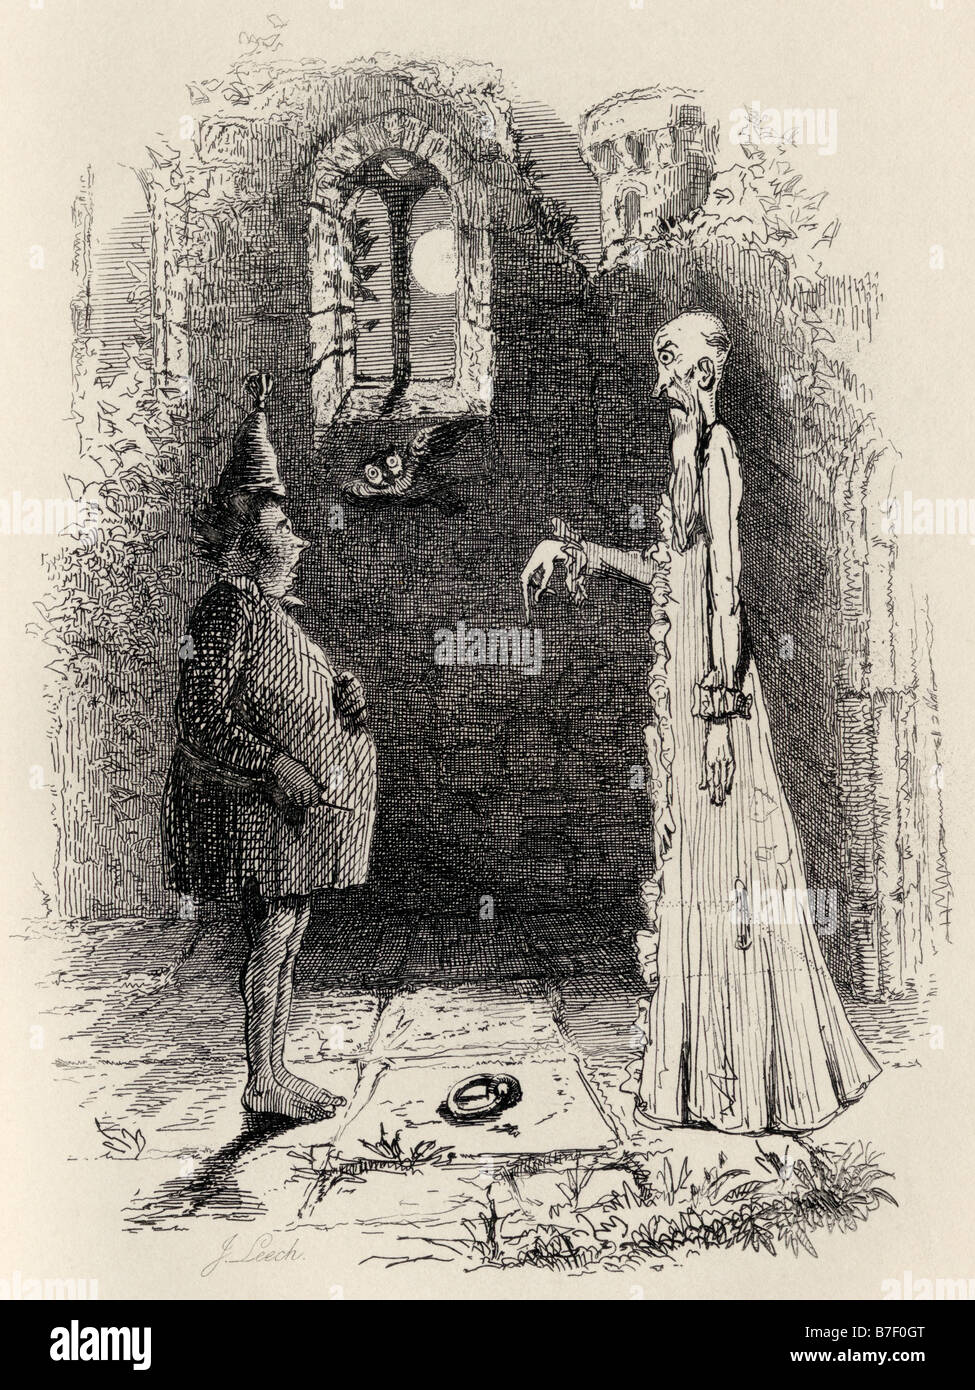 Der Geist. Illustration von John Leech von den Ingoldsby Legends, veröffentlicht von Richard Bentley Son, 1887. Stockfoto